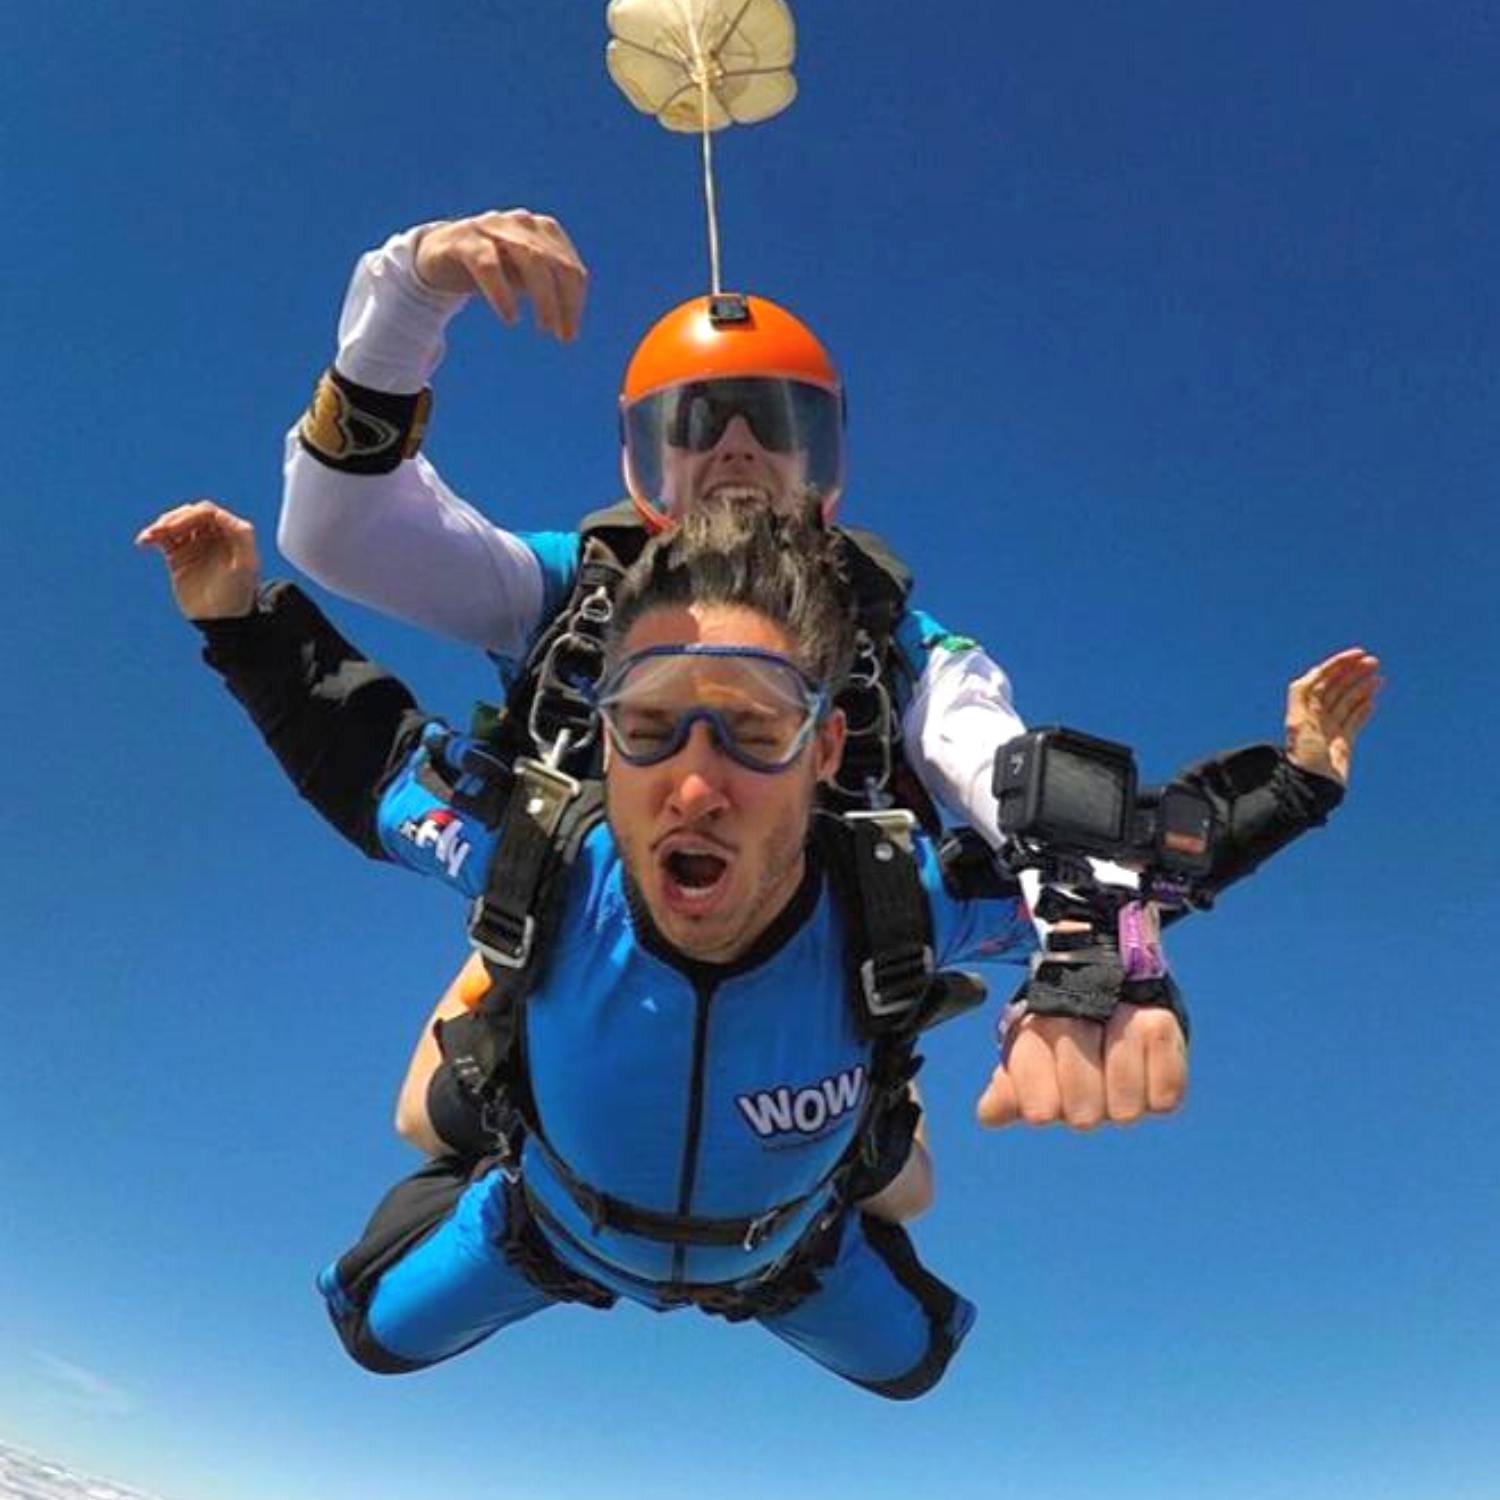 Salto de Paraquedas com Selfie VÍDEO e FOTOS em Boituva-SP (Agende sua data)